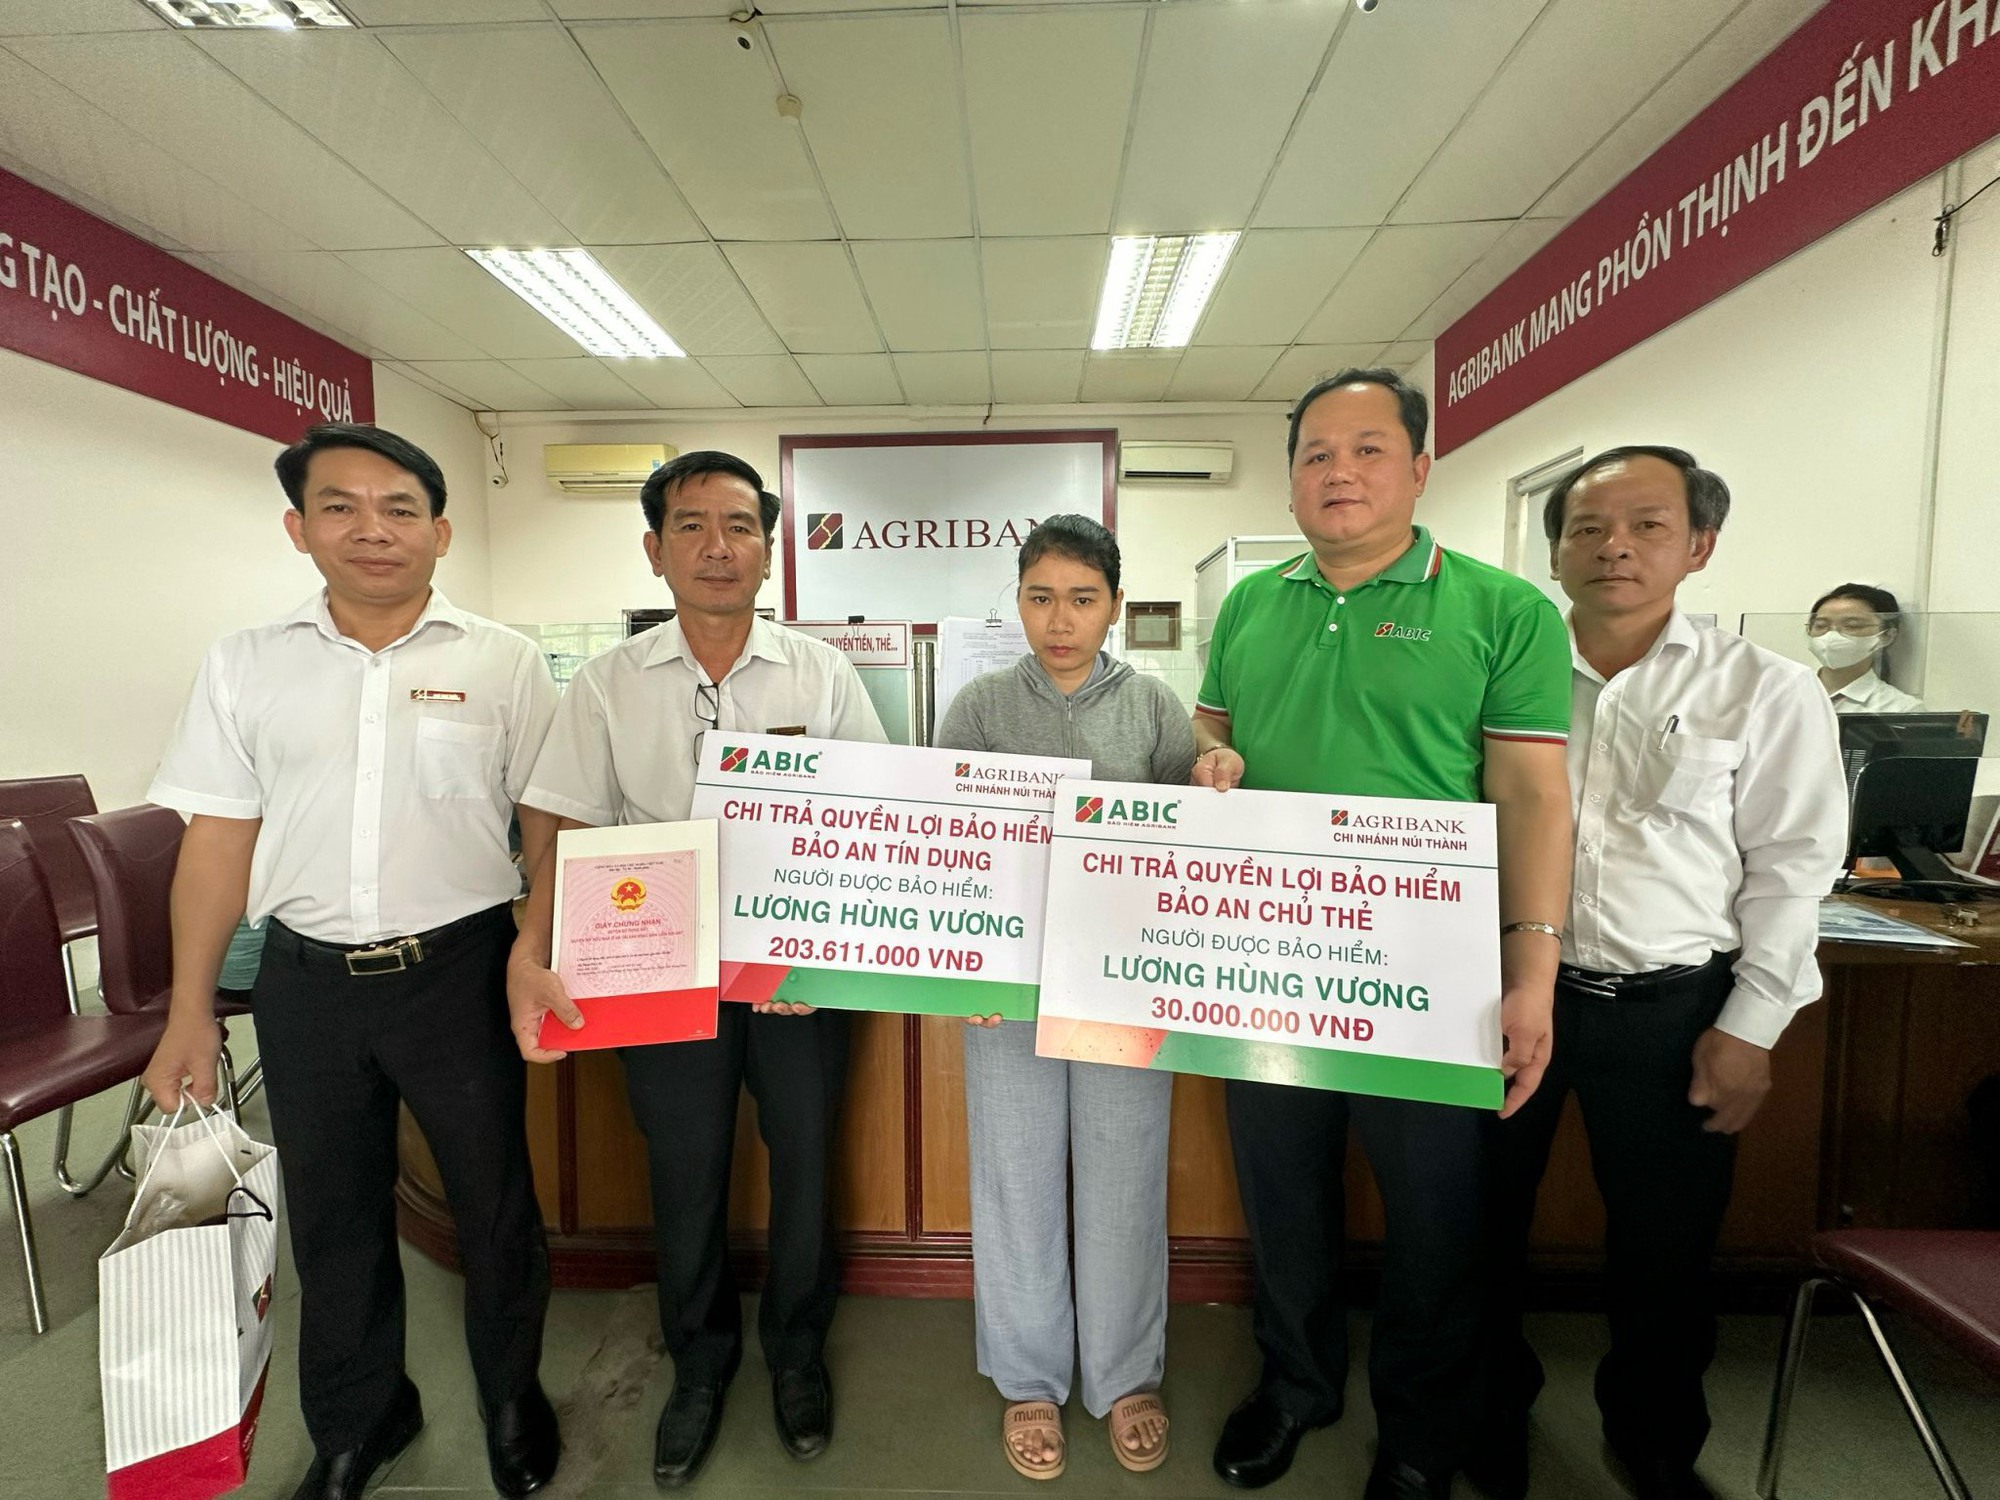 Bảo hiểm Agribank Đà Nẵng chi trả bảo hiểm cho khách hàng trong vụ chìm tàu ở Trường Sa - Ảnh 2.